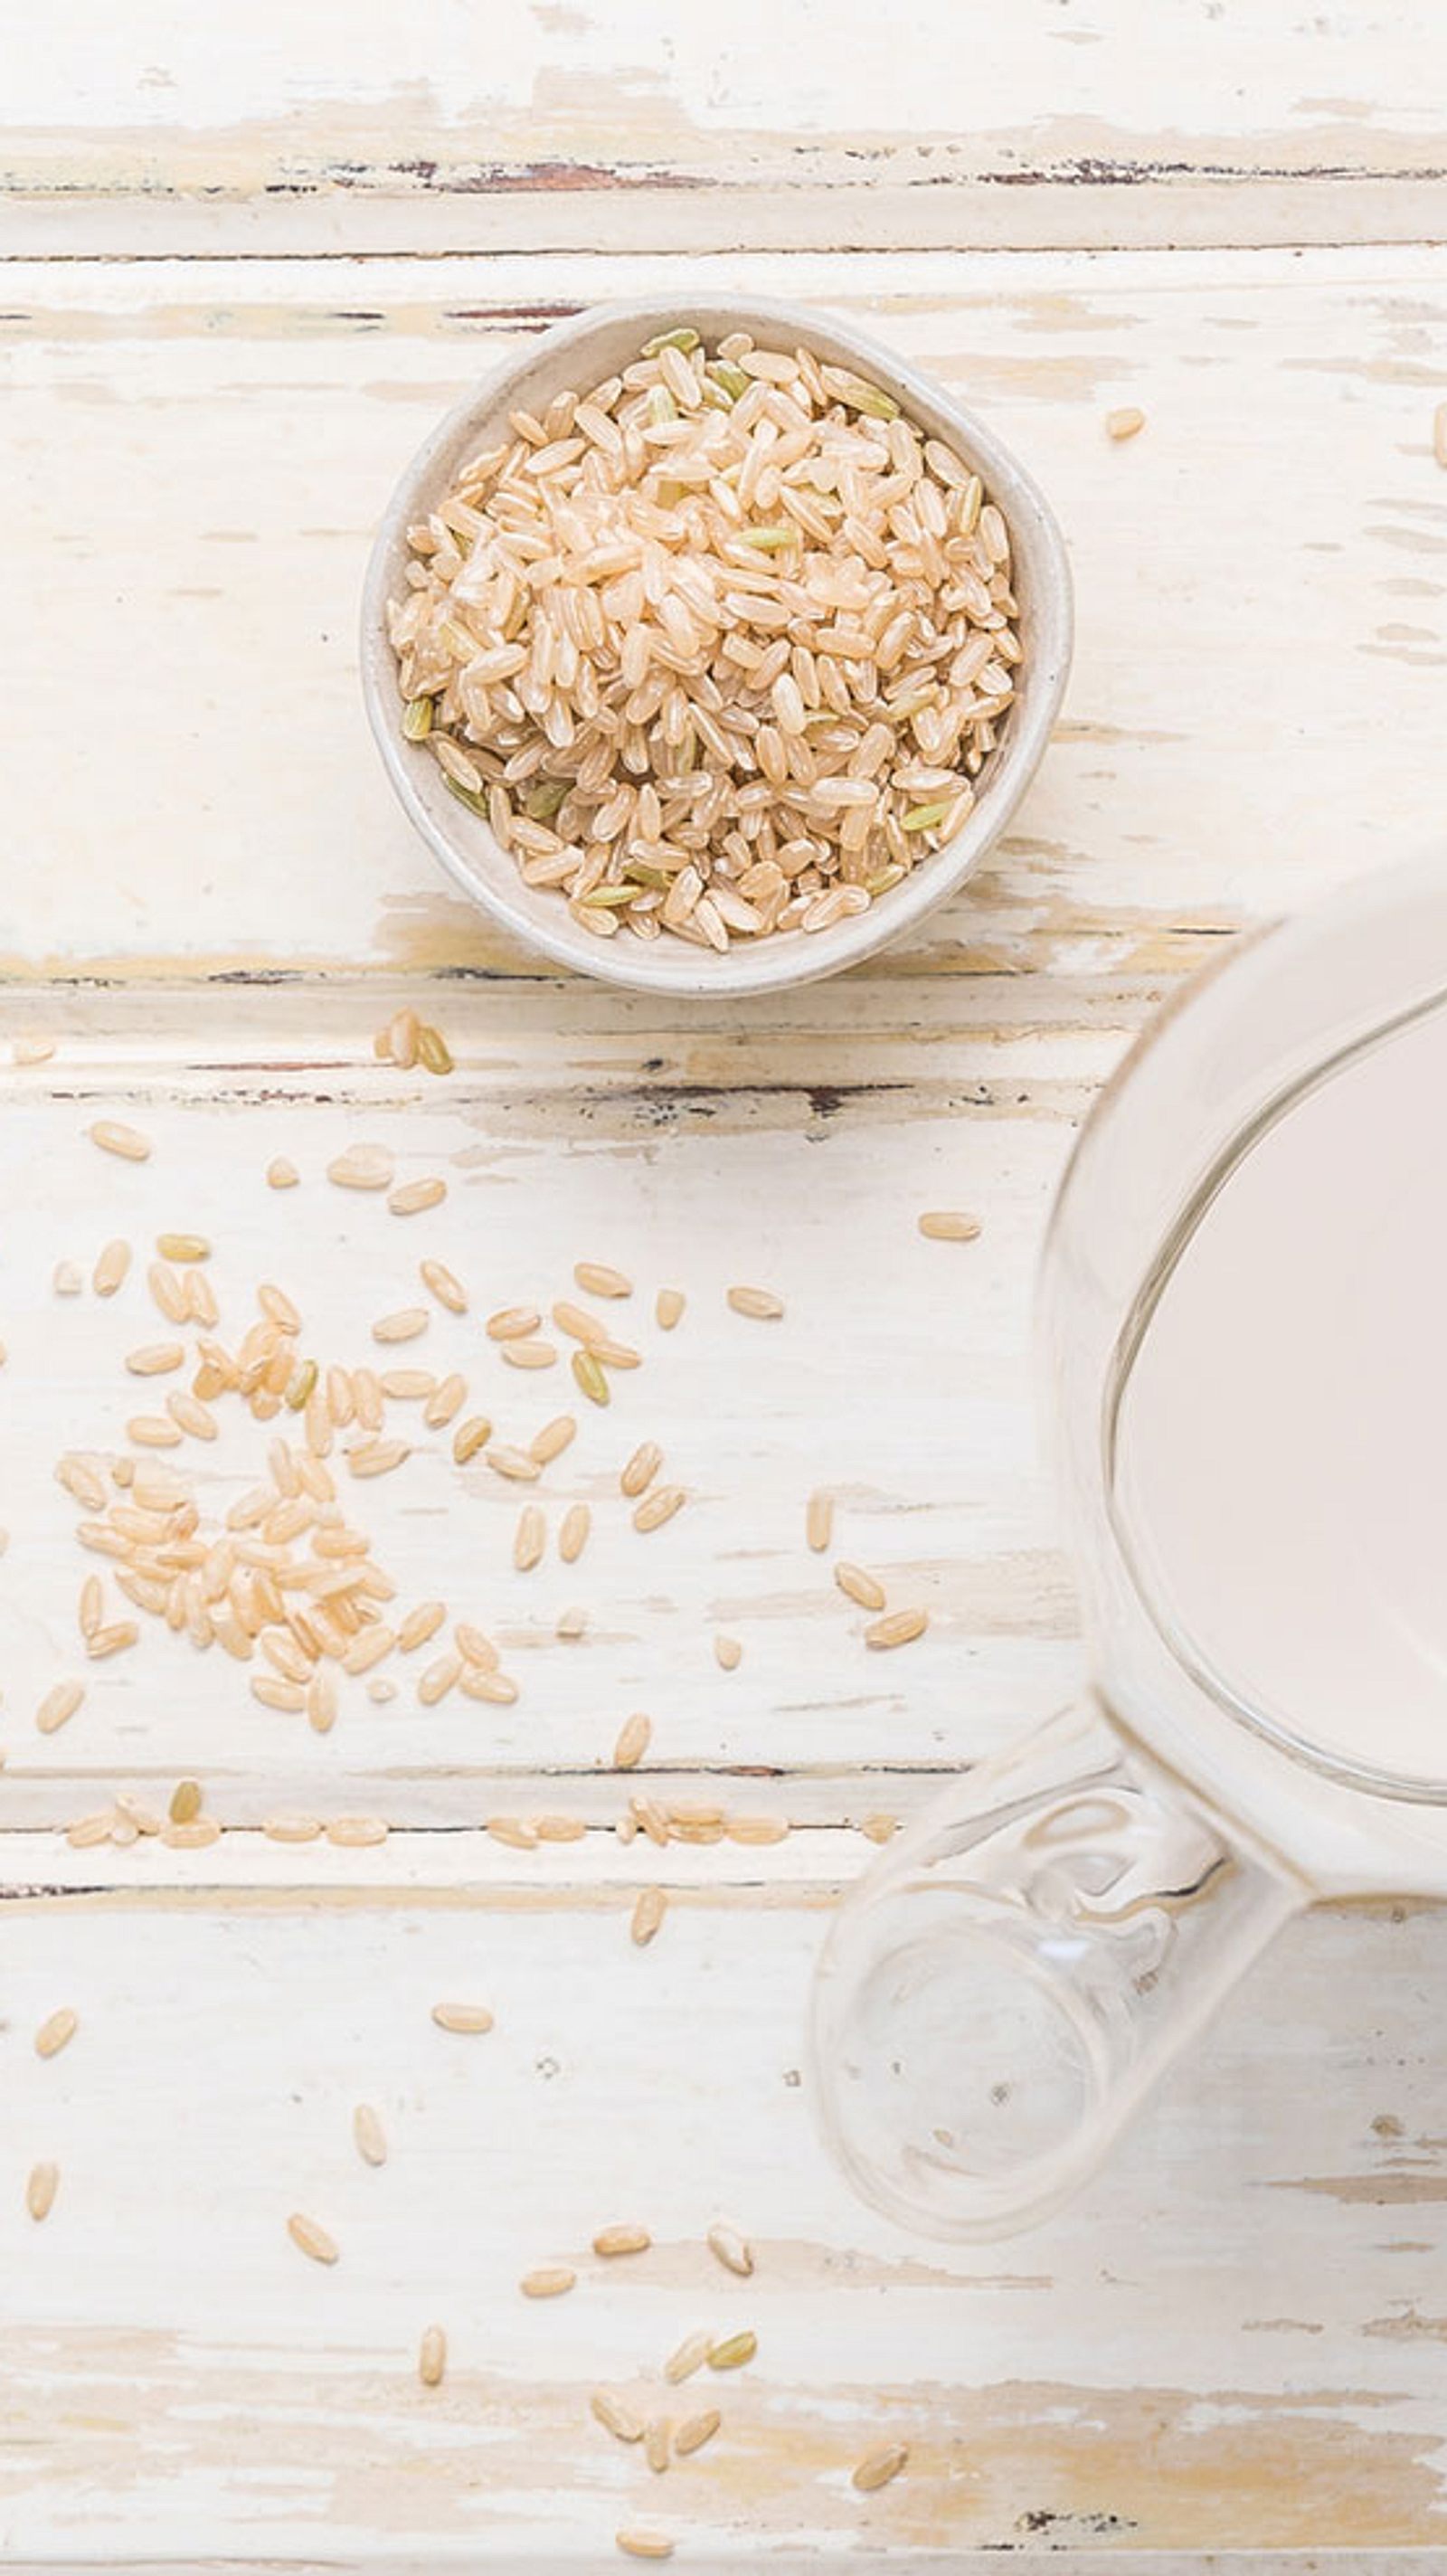 Veganische Reismilch, Andere Milch Als Milchmilch Stockbild - Bild von  frech, selbstgemacht: 158336343